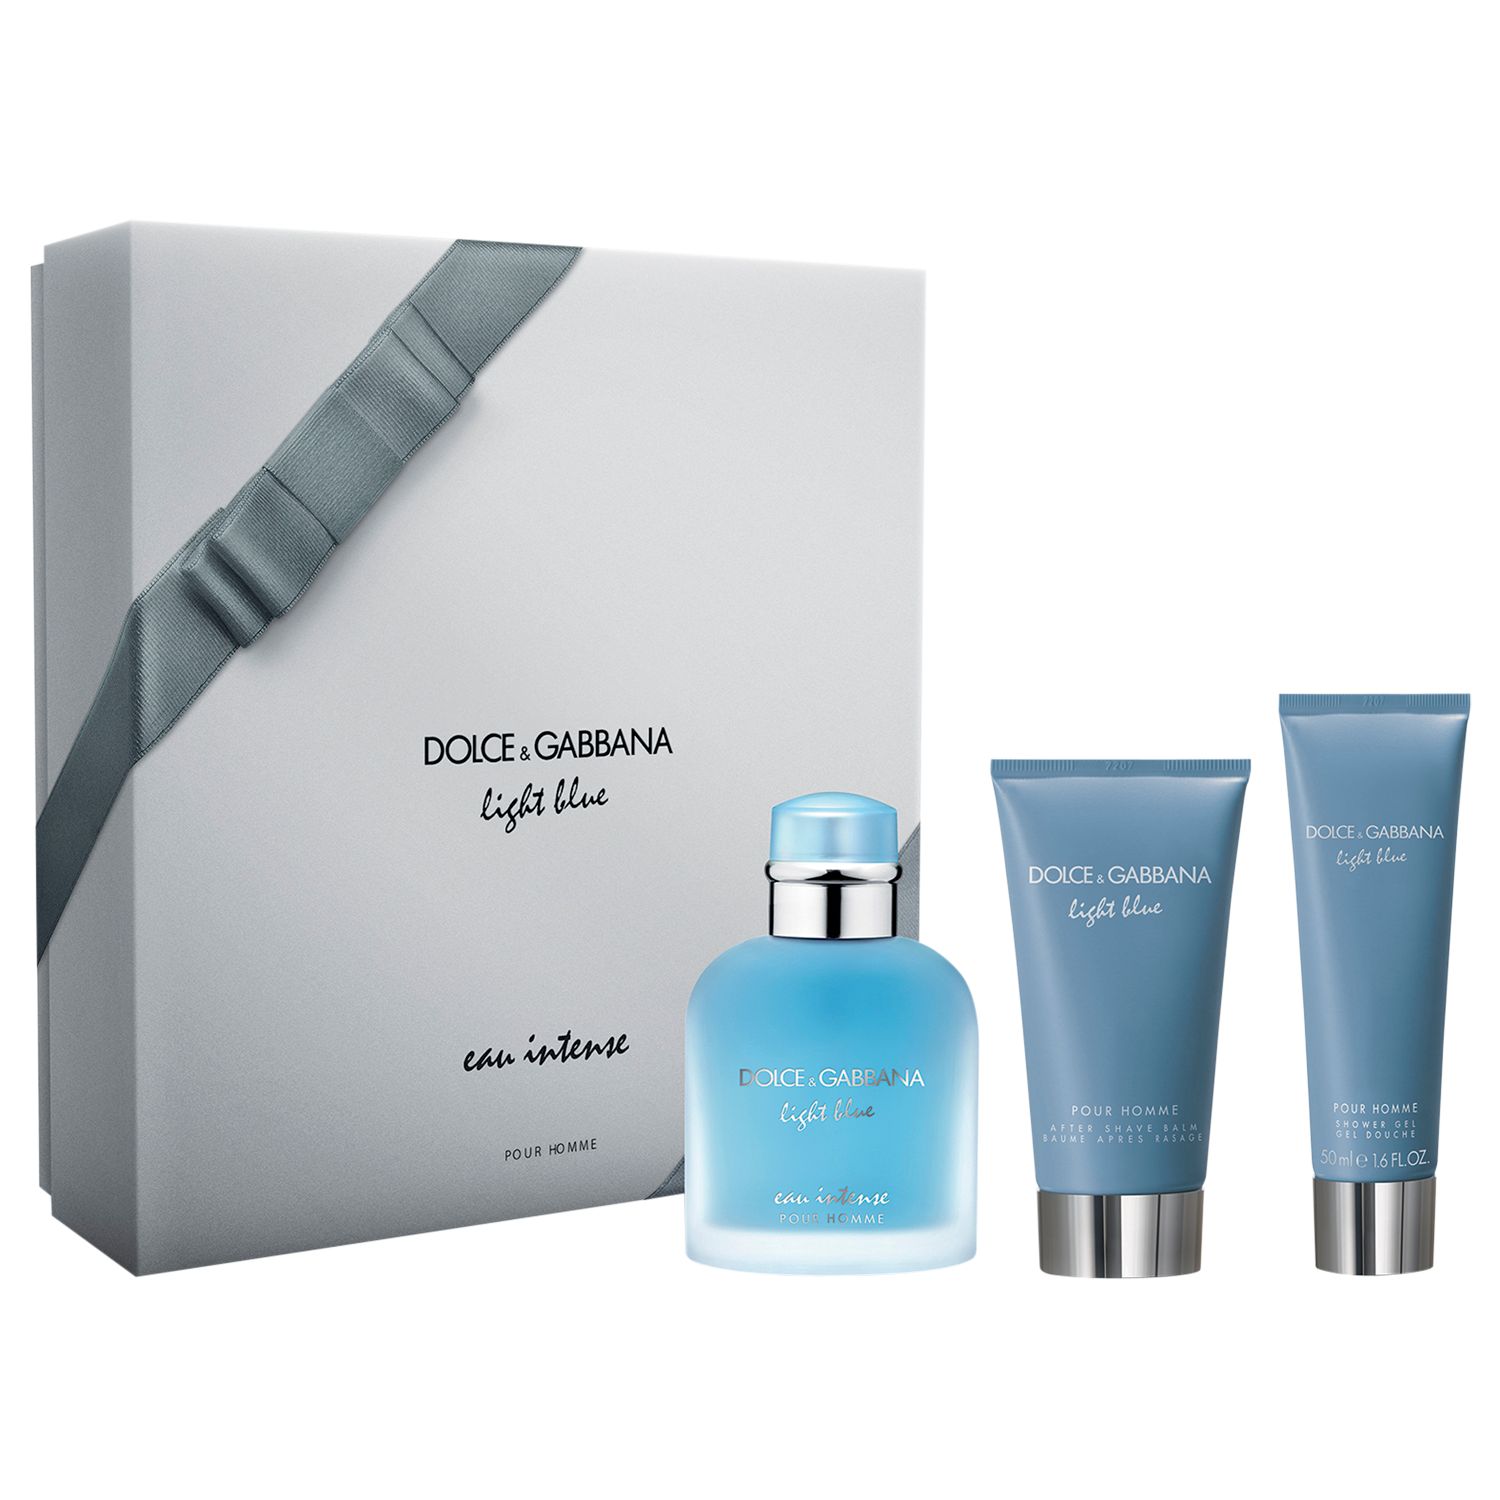 Dolce & Gabbana Light Blue Eau Intense Pour Homme 100ml Eau de Parfum  Fragrance Gift Set